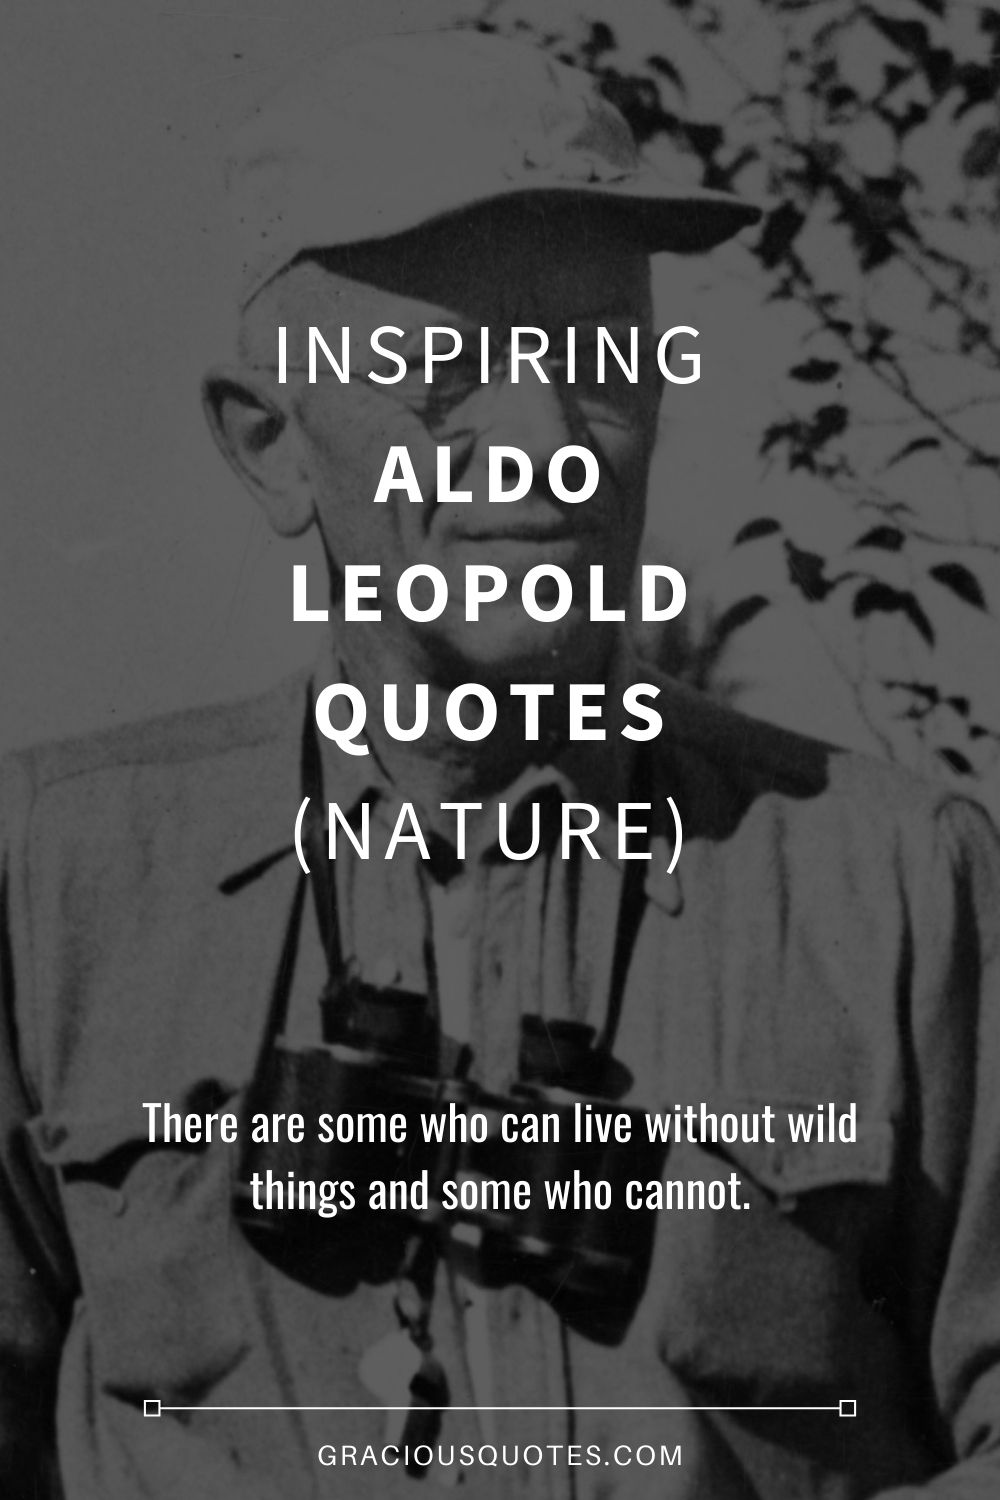 Inspiring Aldo Leopold Quotes (NATURE) - Gracious Quotes